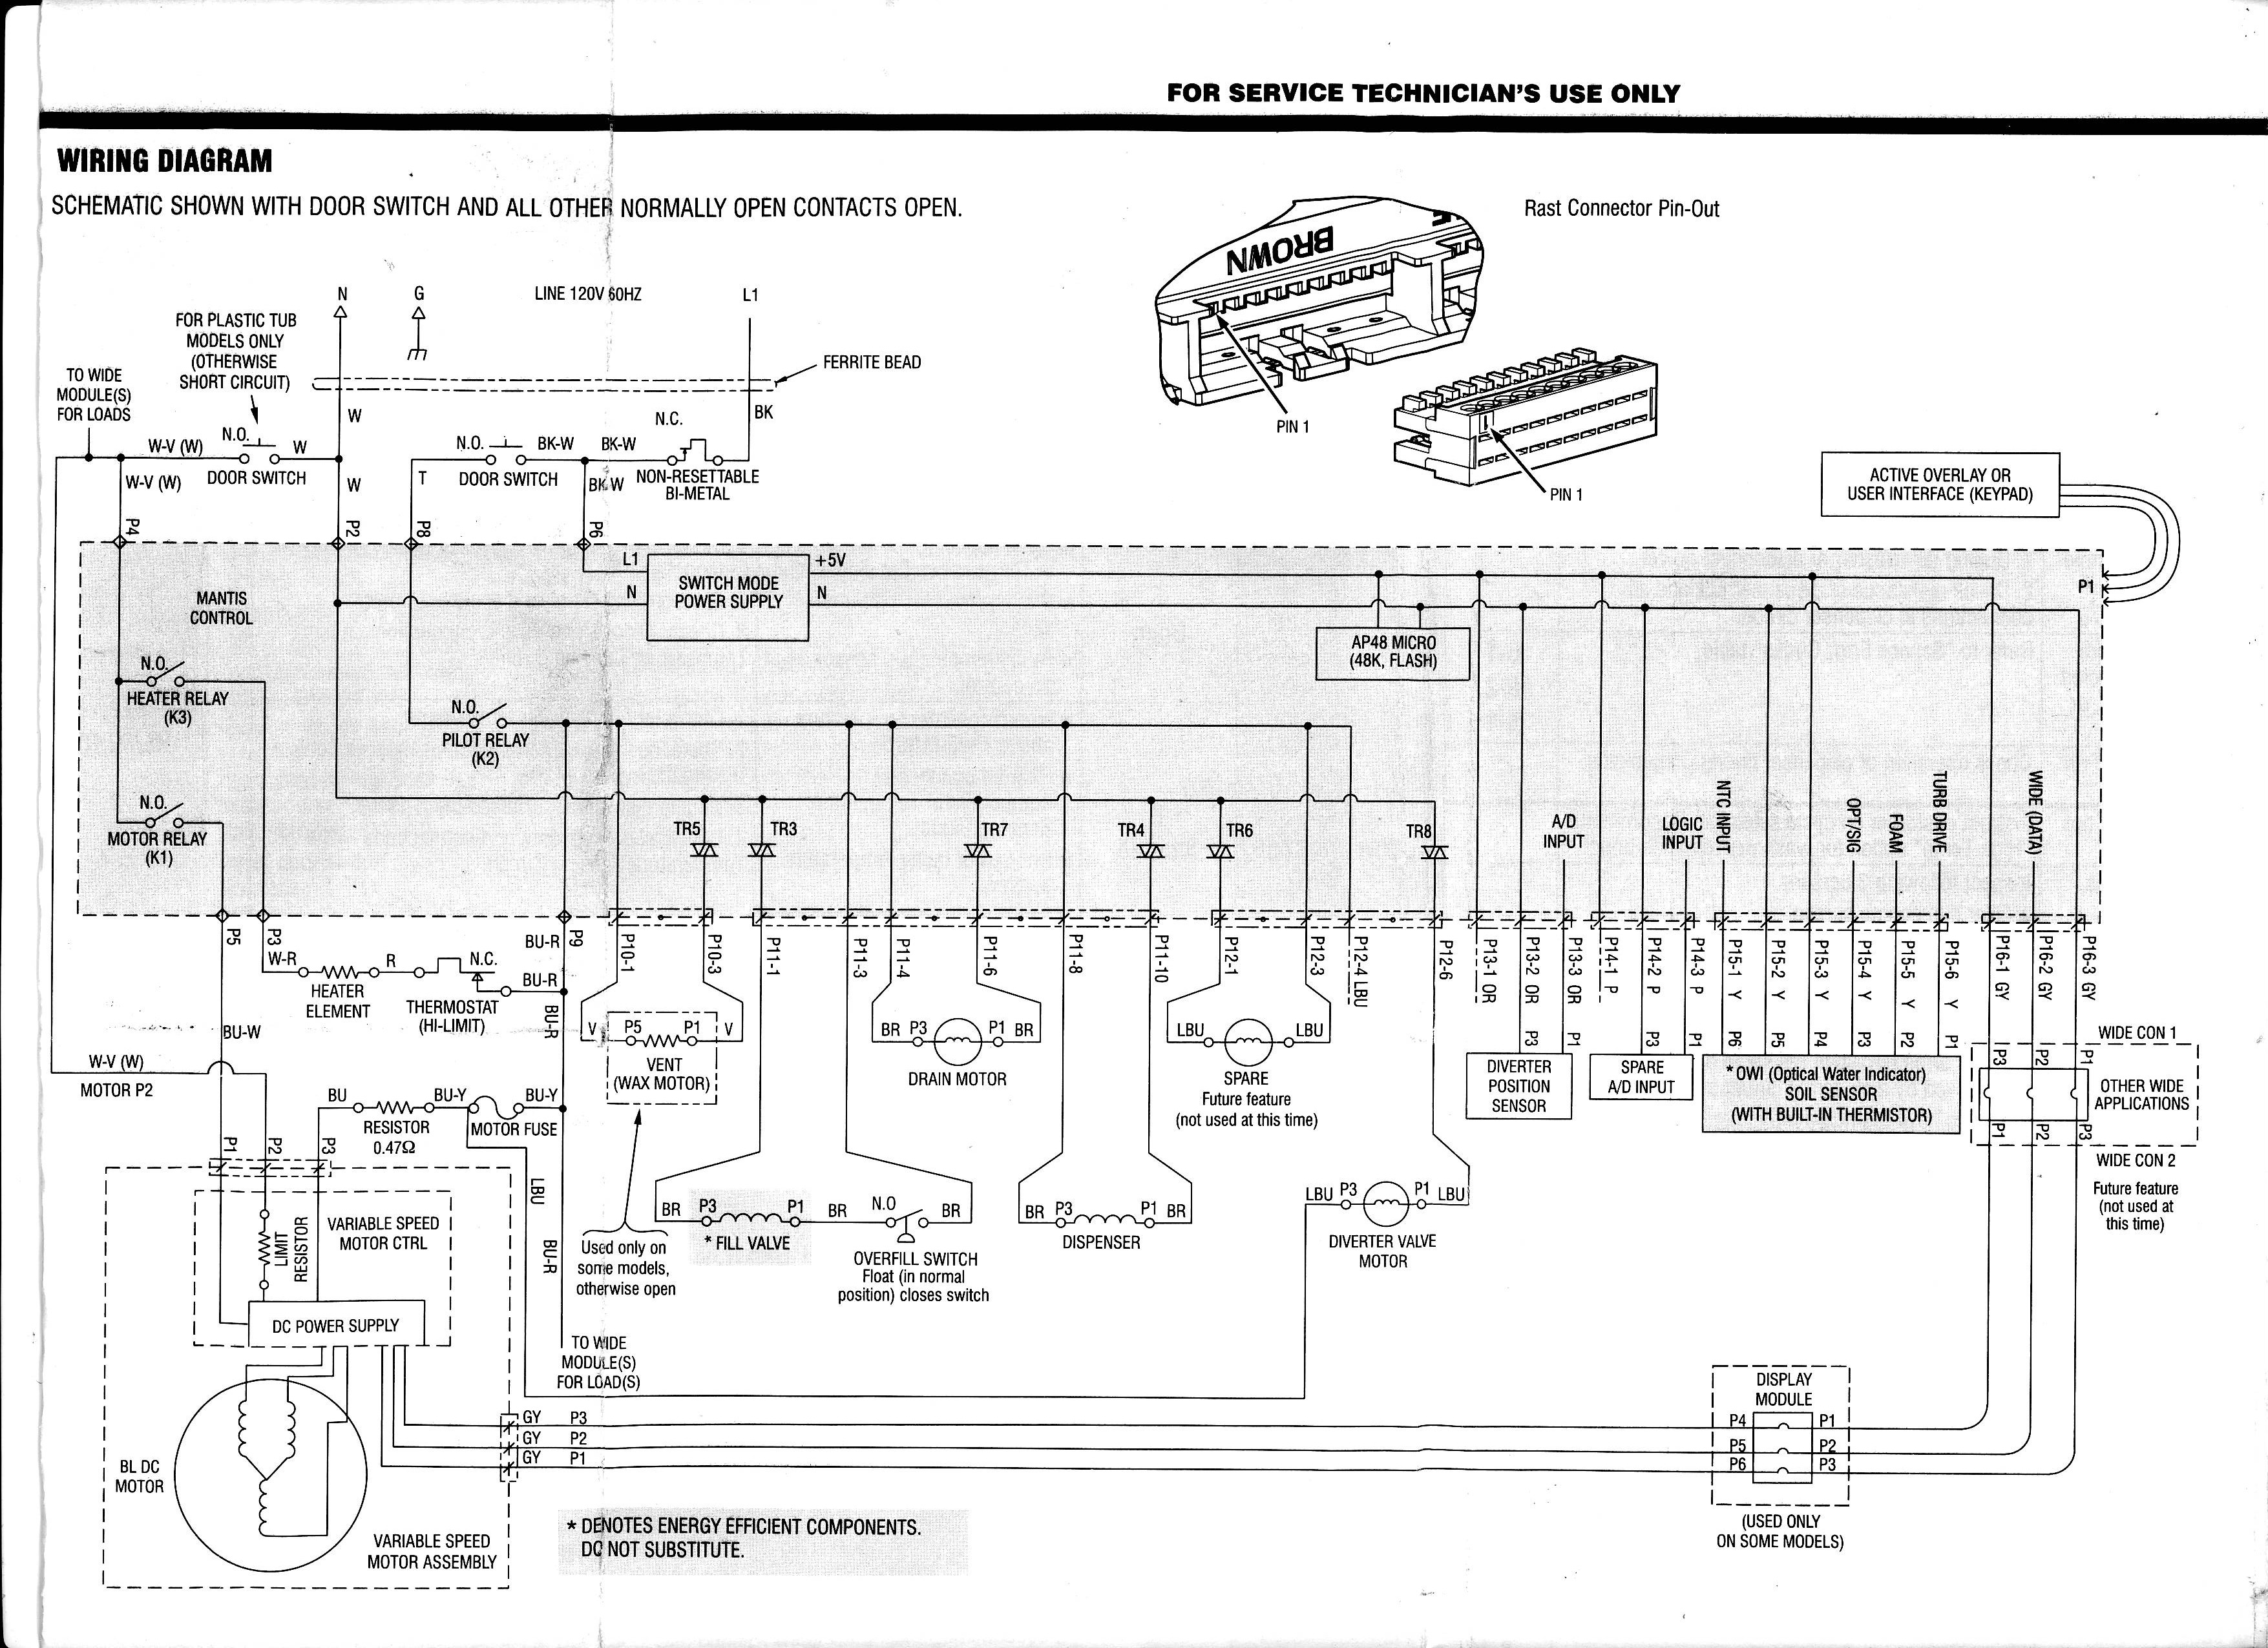 kenmore 665 dishwasher wiring diagram